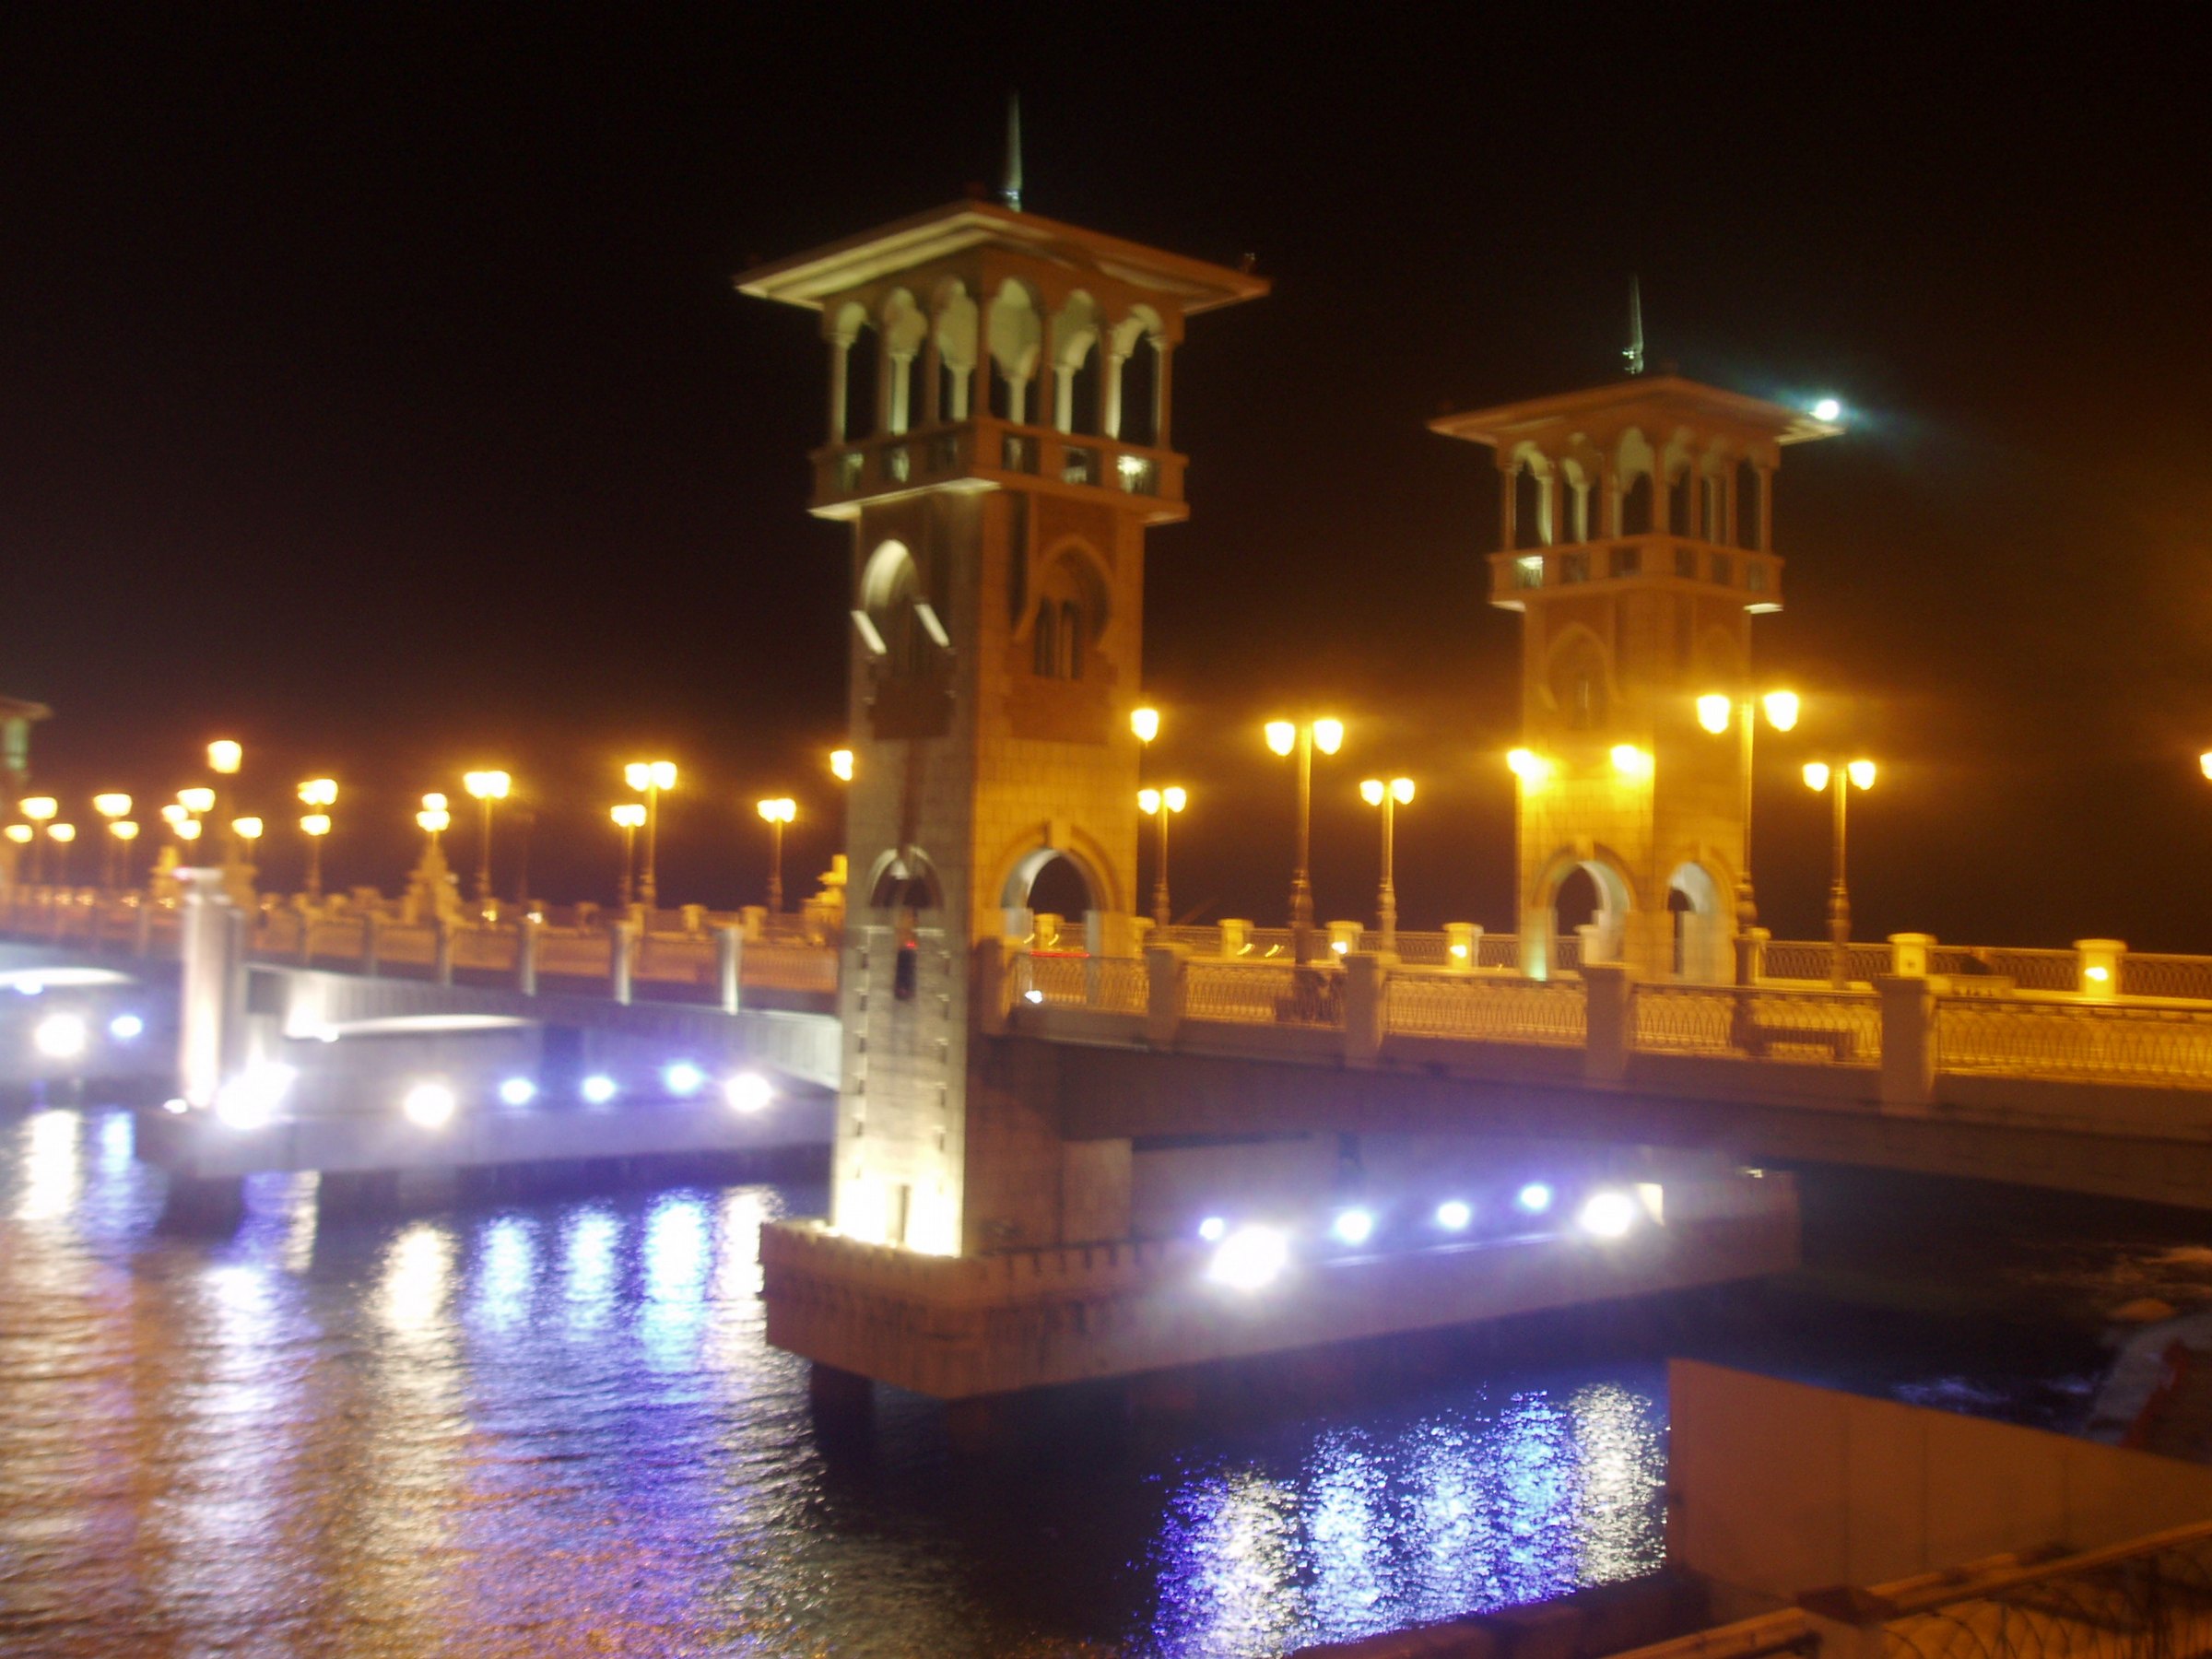 صور المعالم السياحية في مدينة الأسكندرية 2014 , صور جميلة جدا لمحافظة الأسكندرية 2014